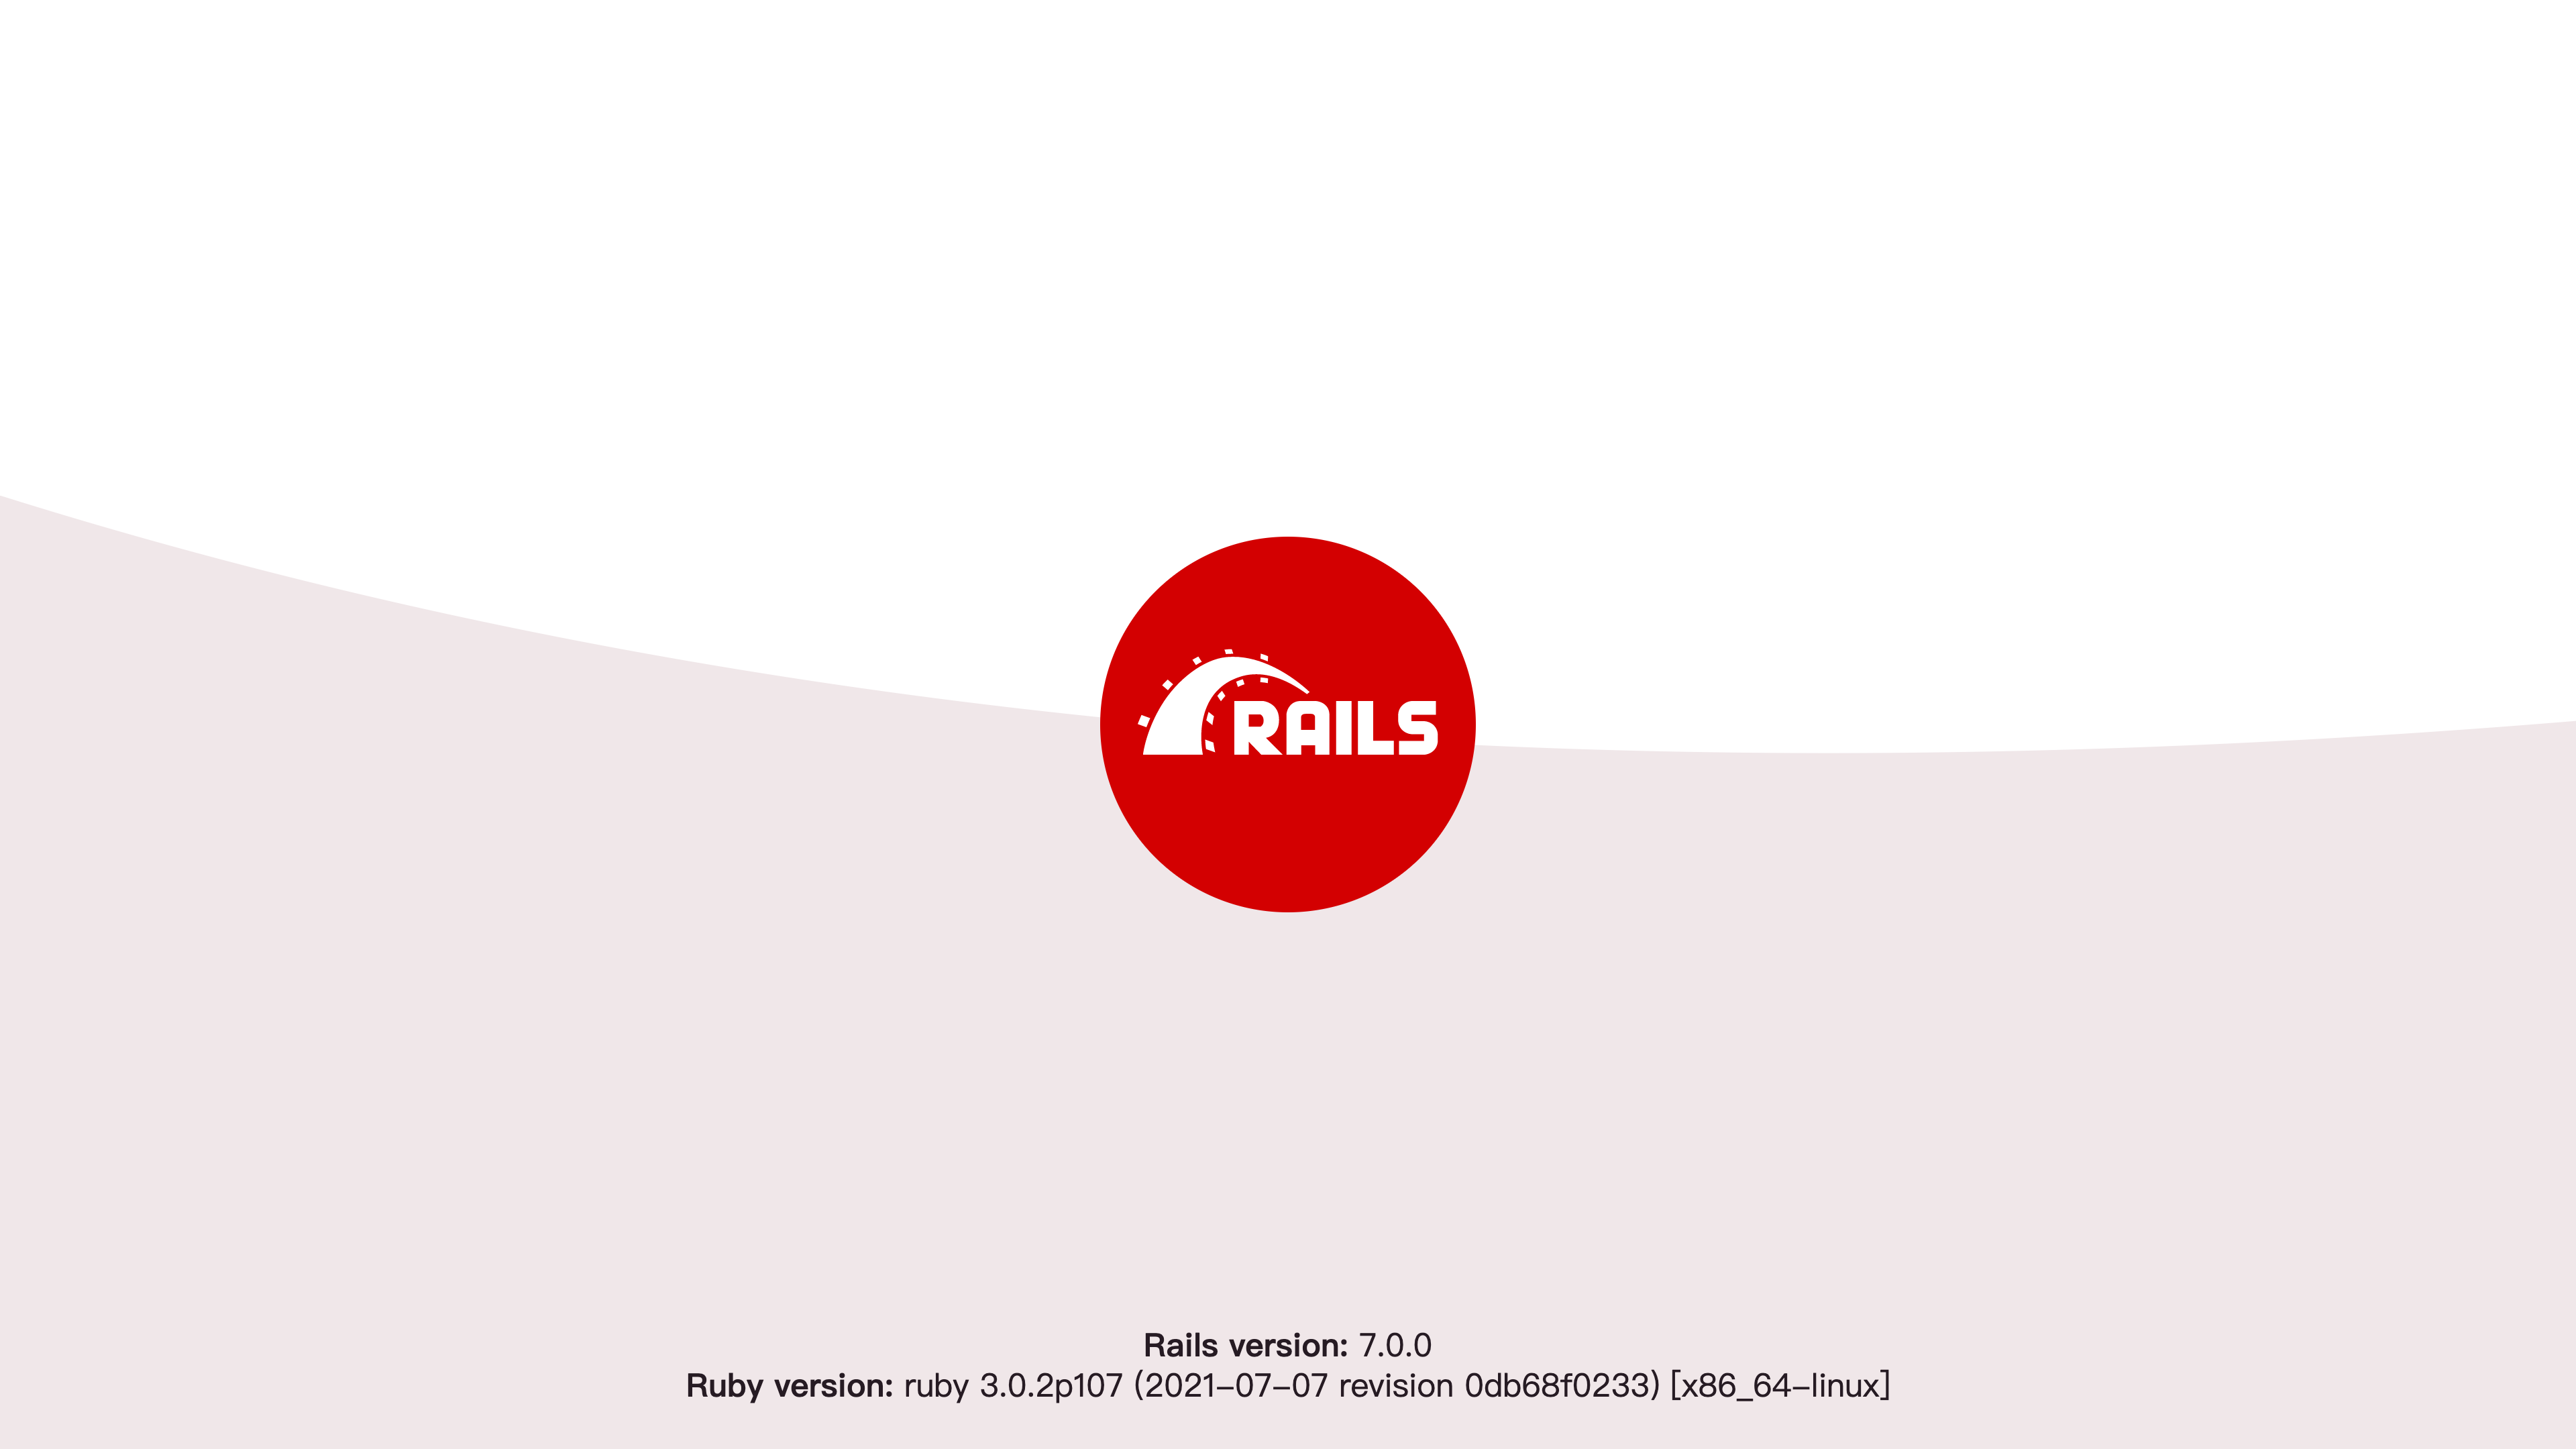 Rails launch page